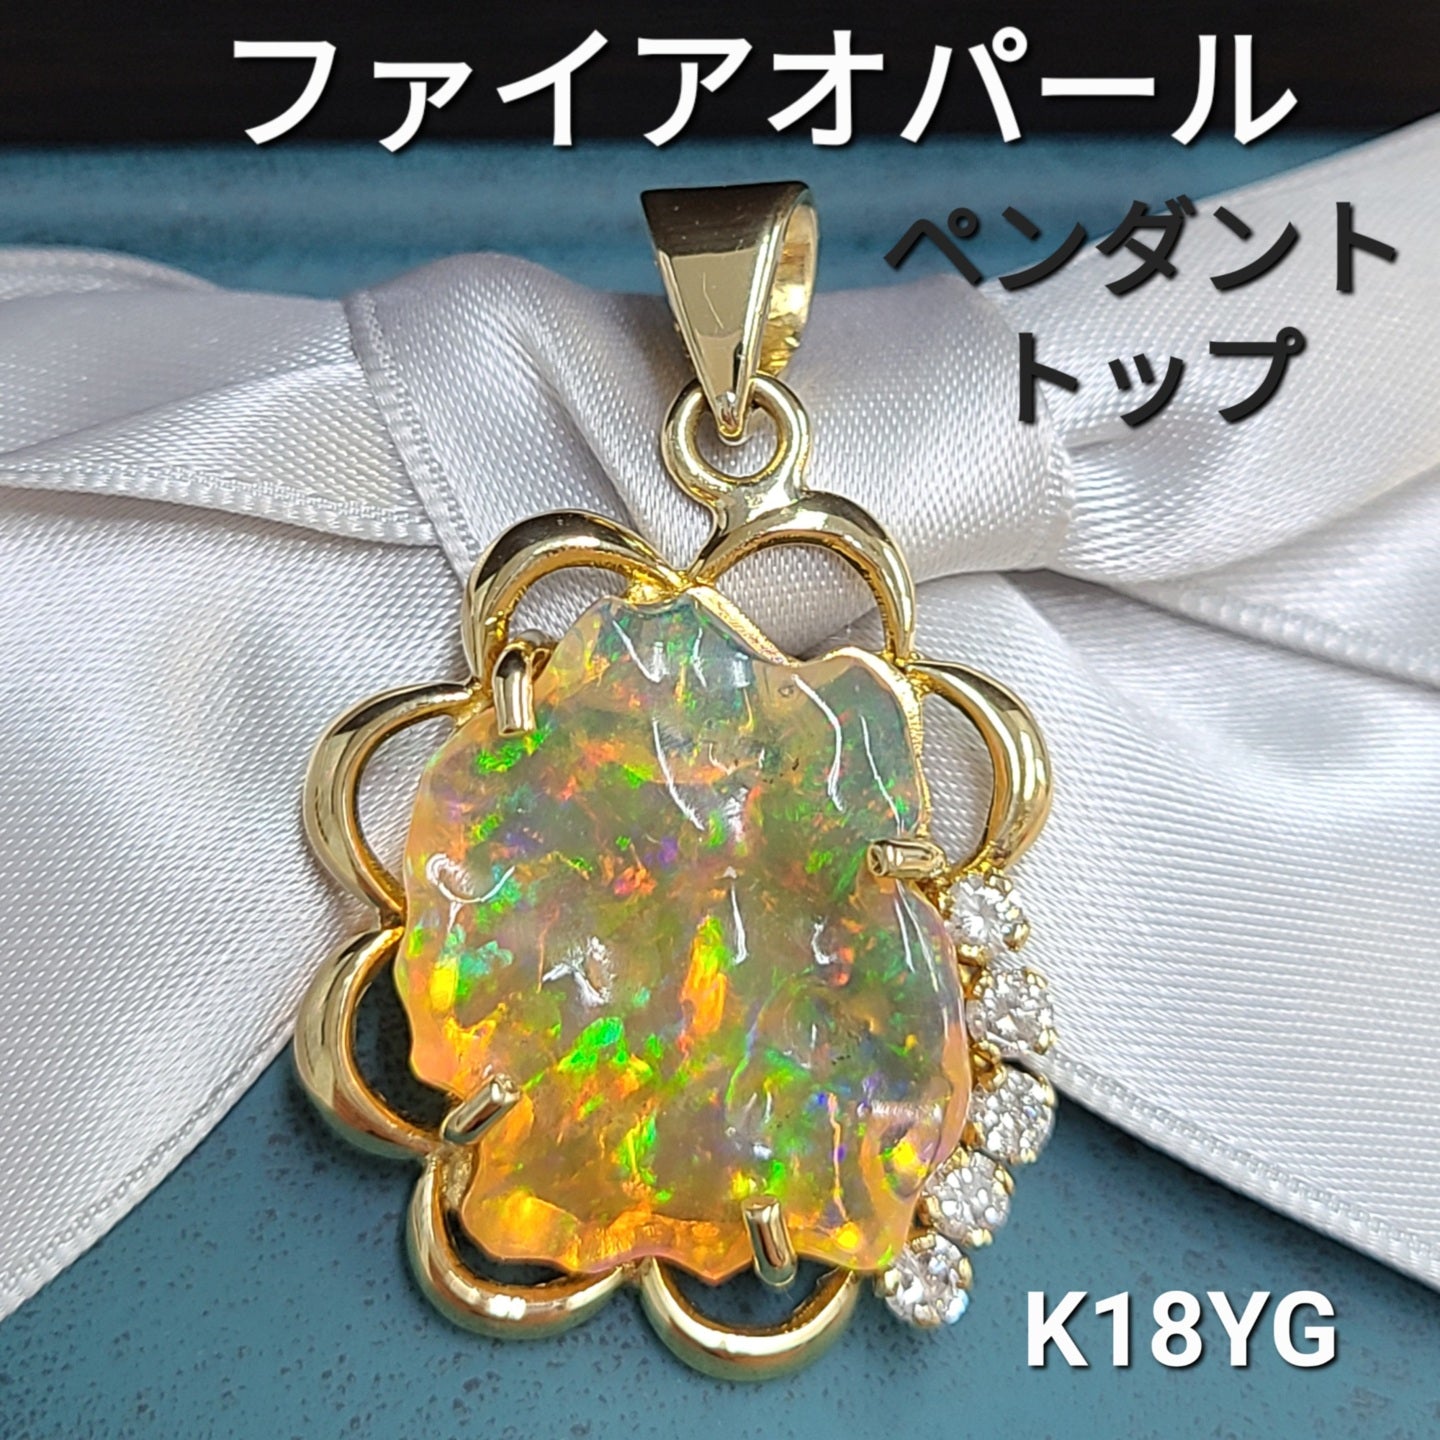 情熱的な彩り 天然 ファイアオパール ダイヤモンド K18 YG イエロー